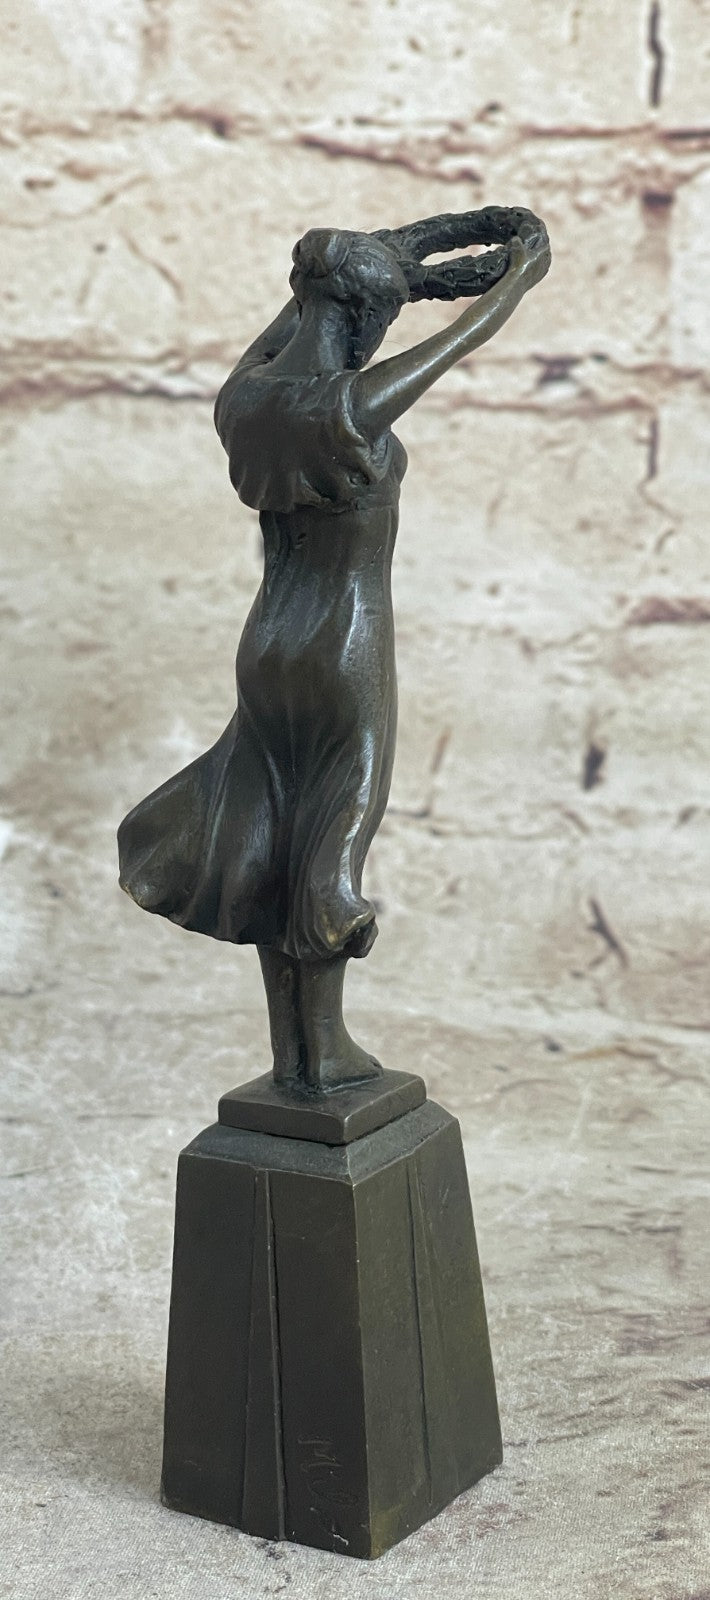 5.5" Tall Signed Roman Maiden Bronze Sculpture Statue Figure Figurine Deco Figure